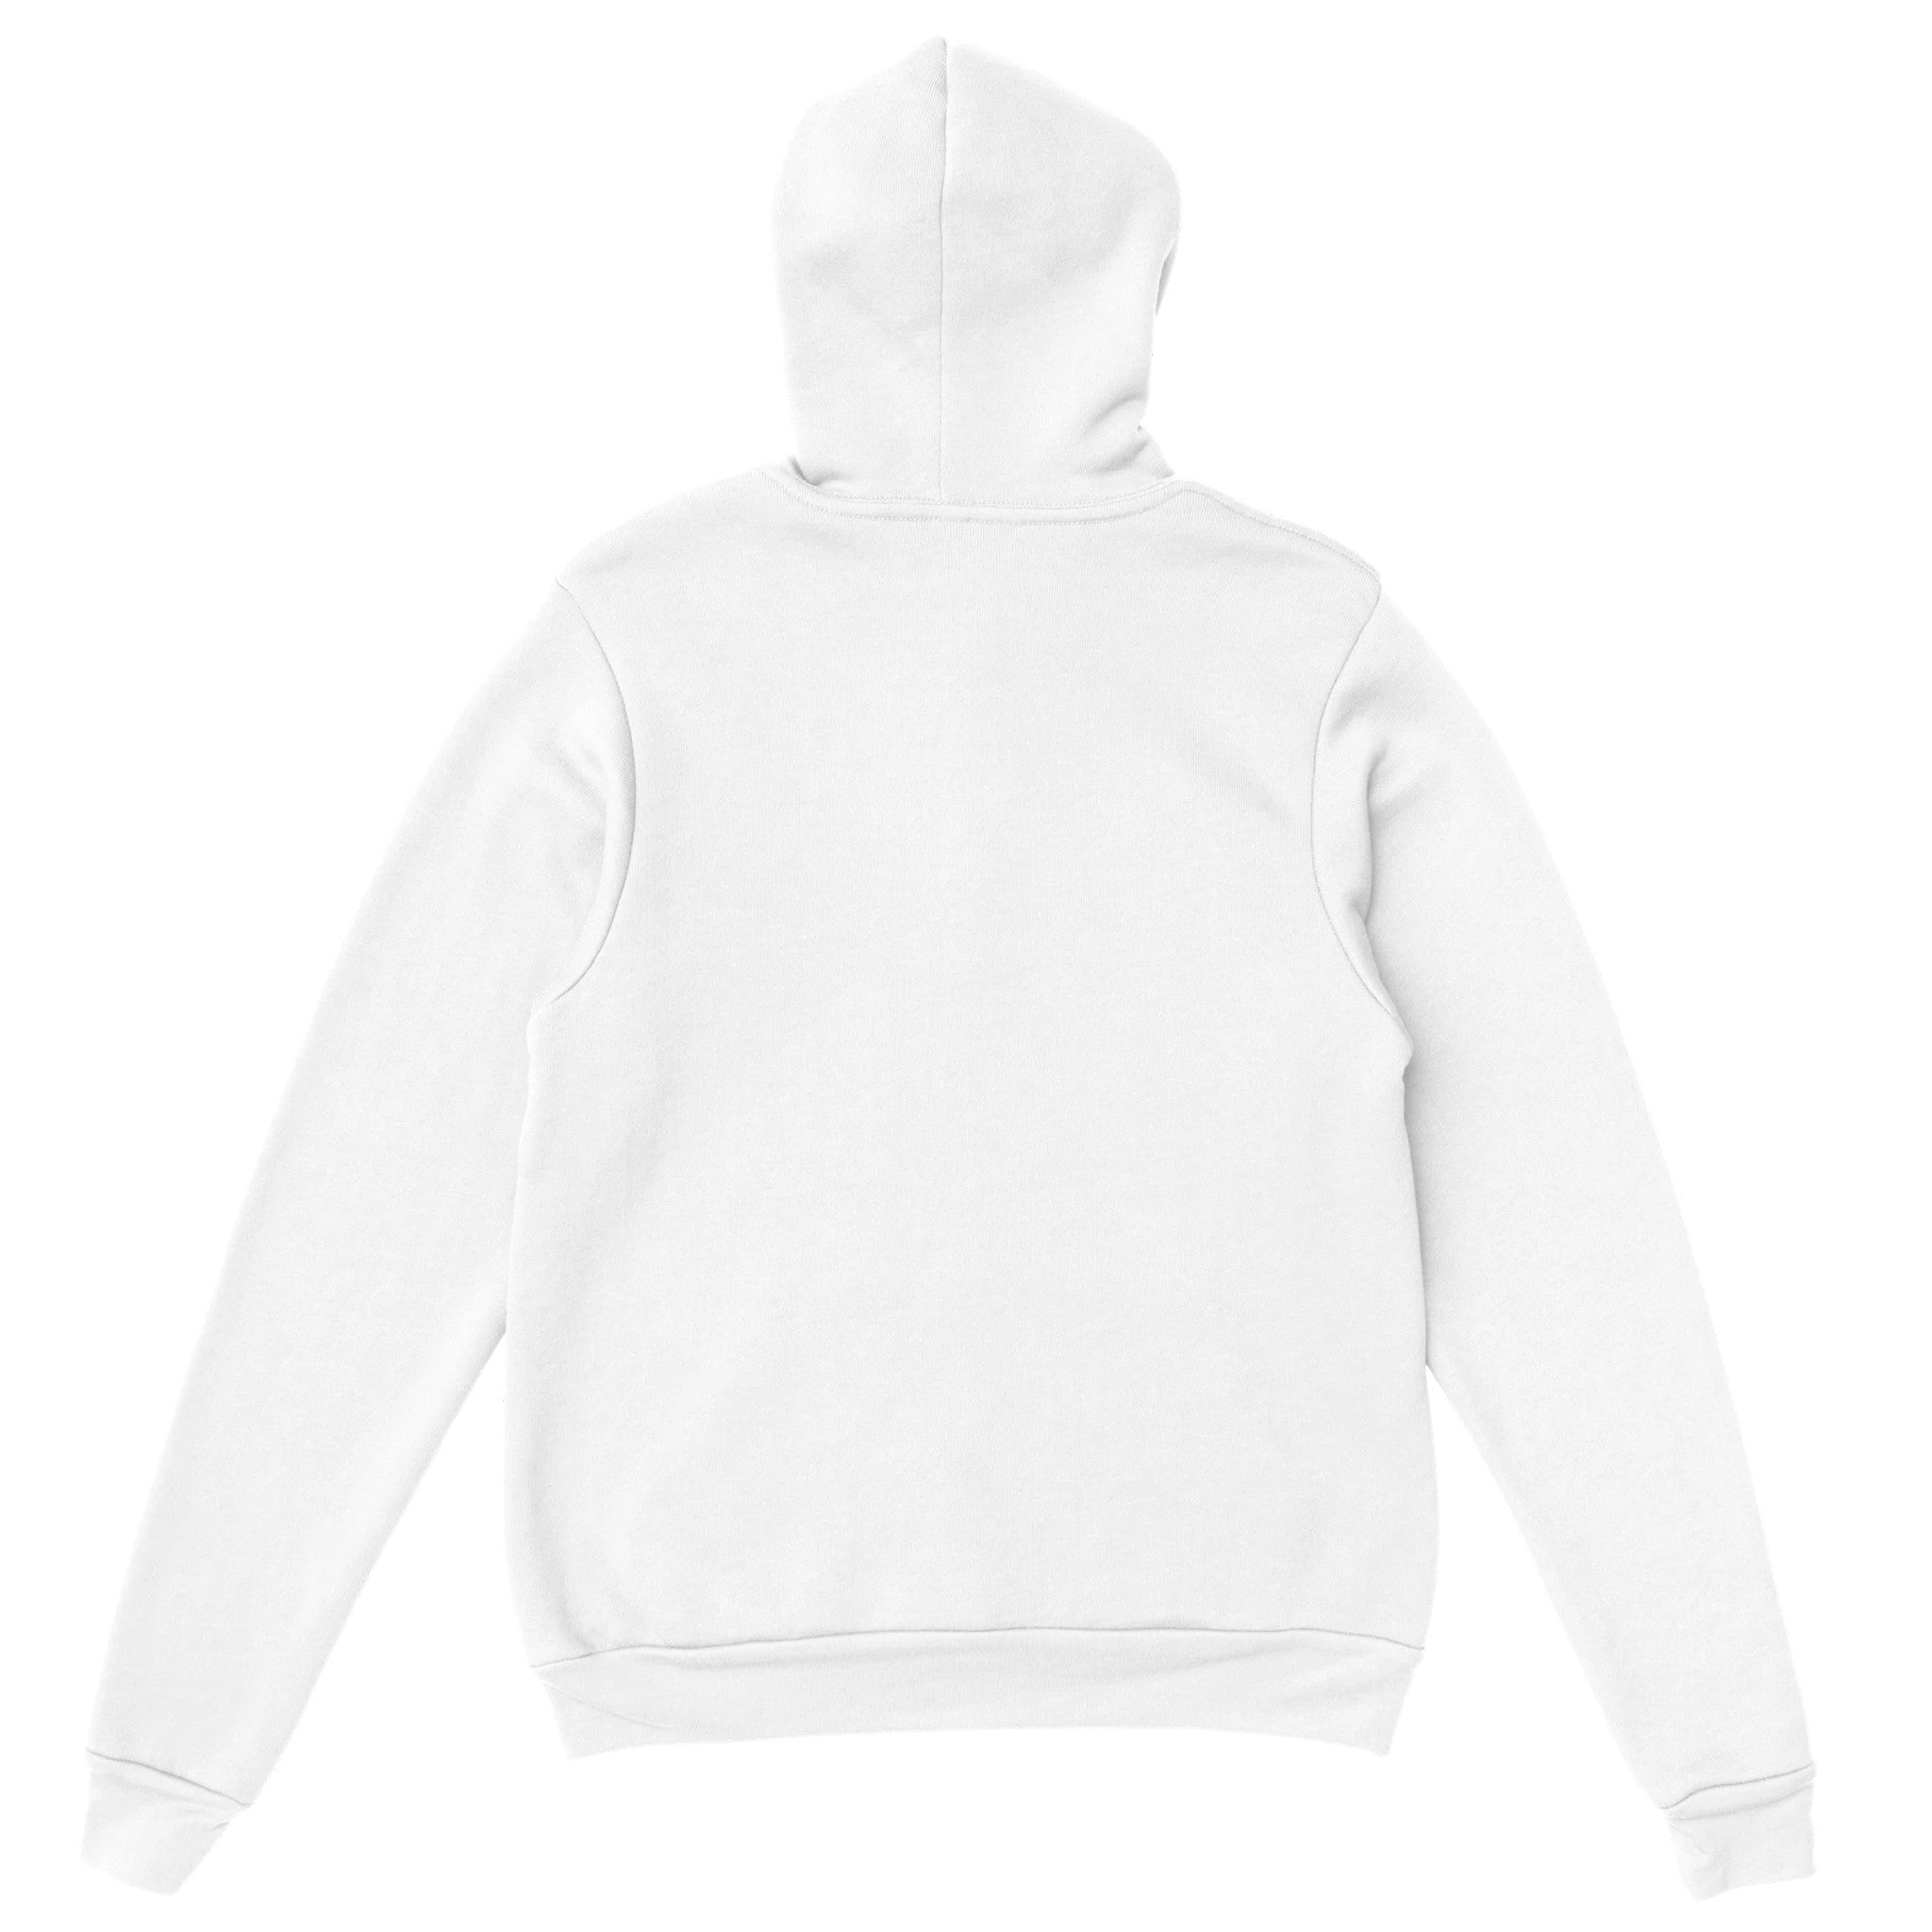 'Top Model' hoodie - In Print We Trust